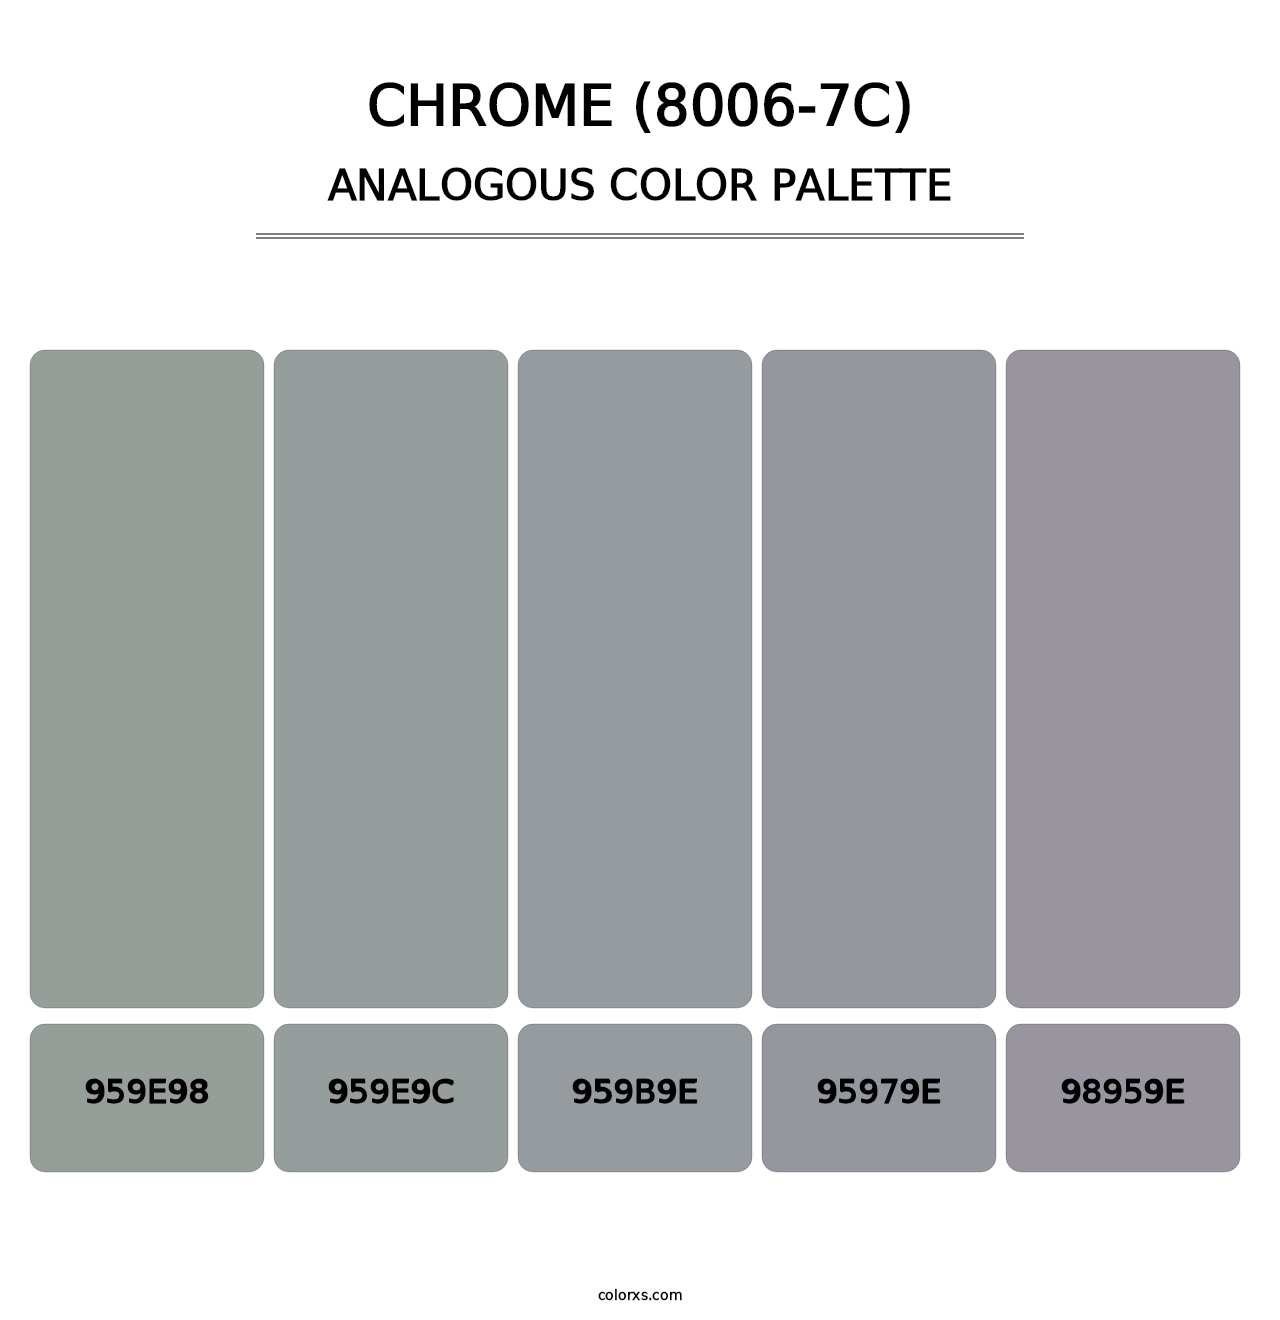 Chrome (8006-7C) - Analogous Color Palette